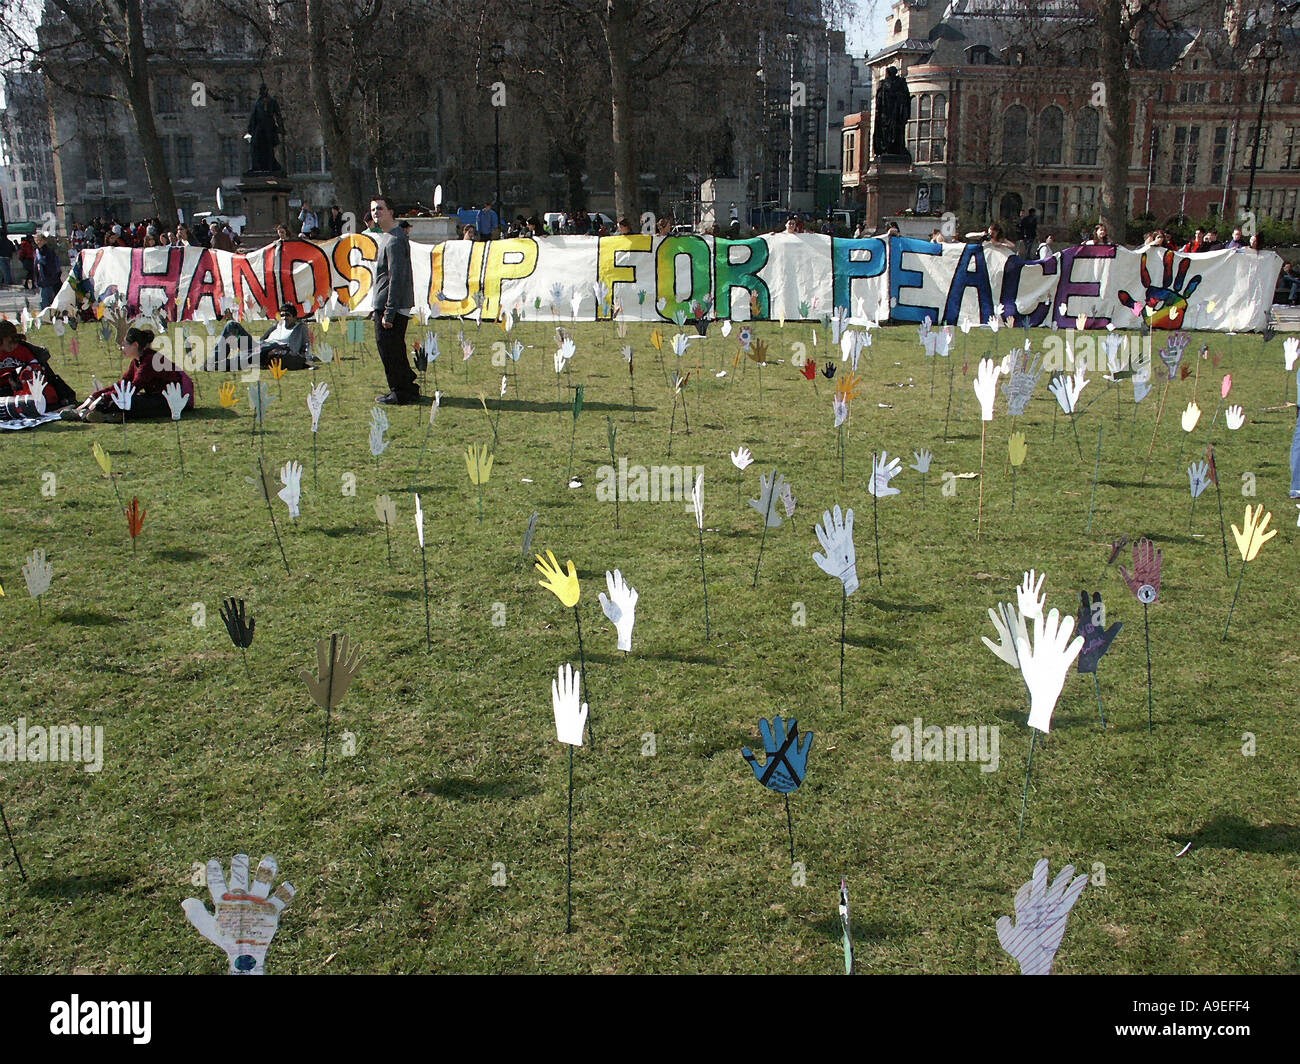 20 Mars 2003 Haut les mains pour la paix démonstration par les élèves au Parlement Square Londres contre une guerre en Irak Banque D'Images